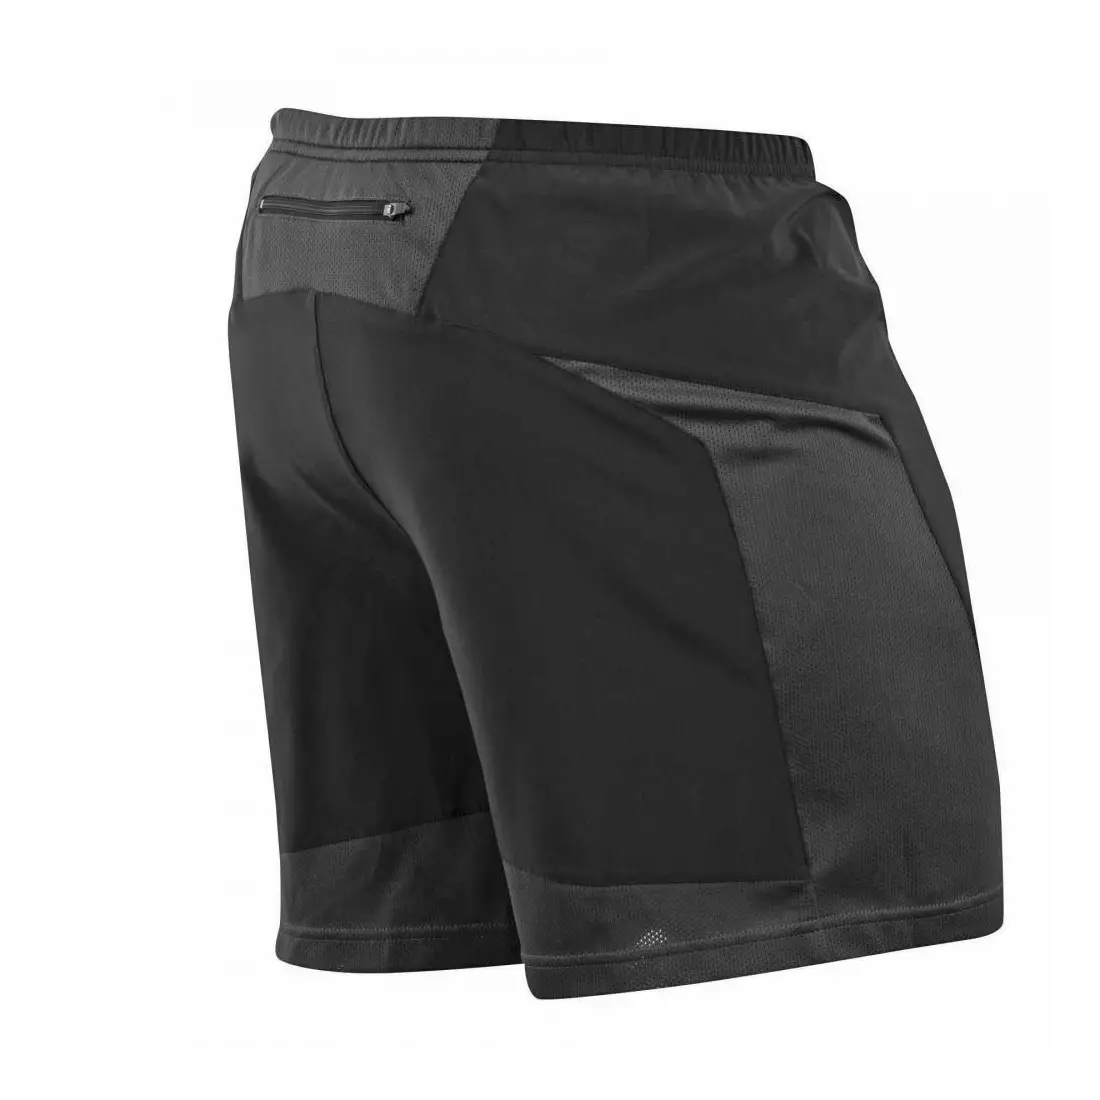 PEARL IZUMI Flash Short pánske bežecké šortky 12111502-2FJ